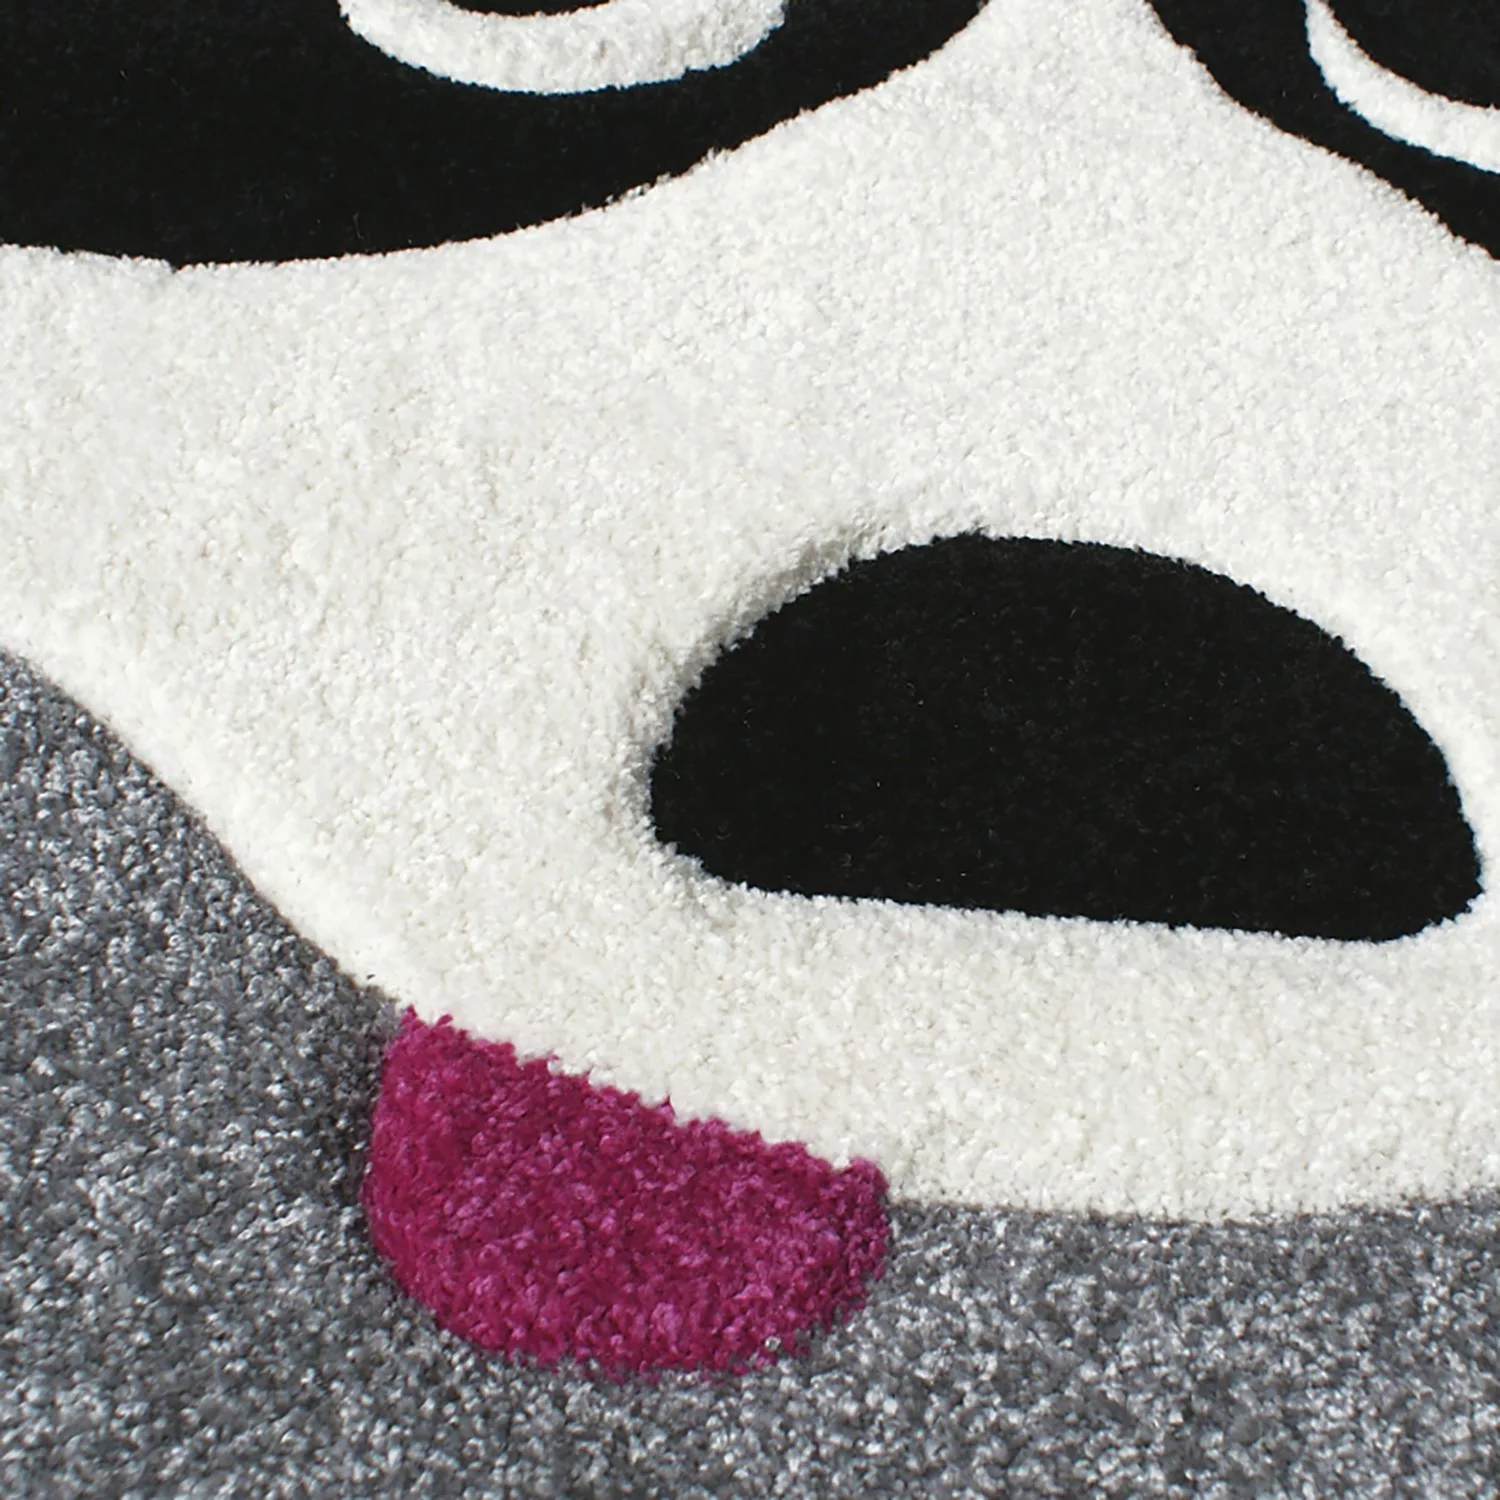 home24 Svanhilde Kinderteppich Panda Paul Grau/Weiß Tier Design Kunstfaser günstig online kaufen